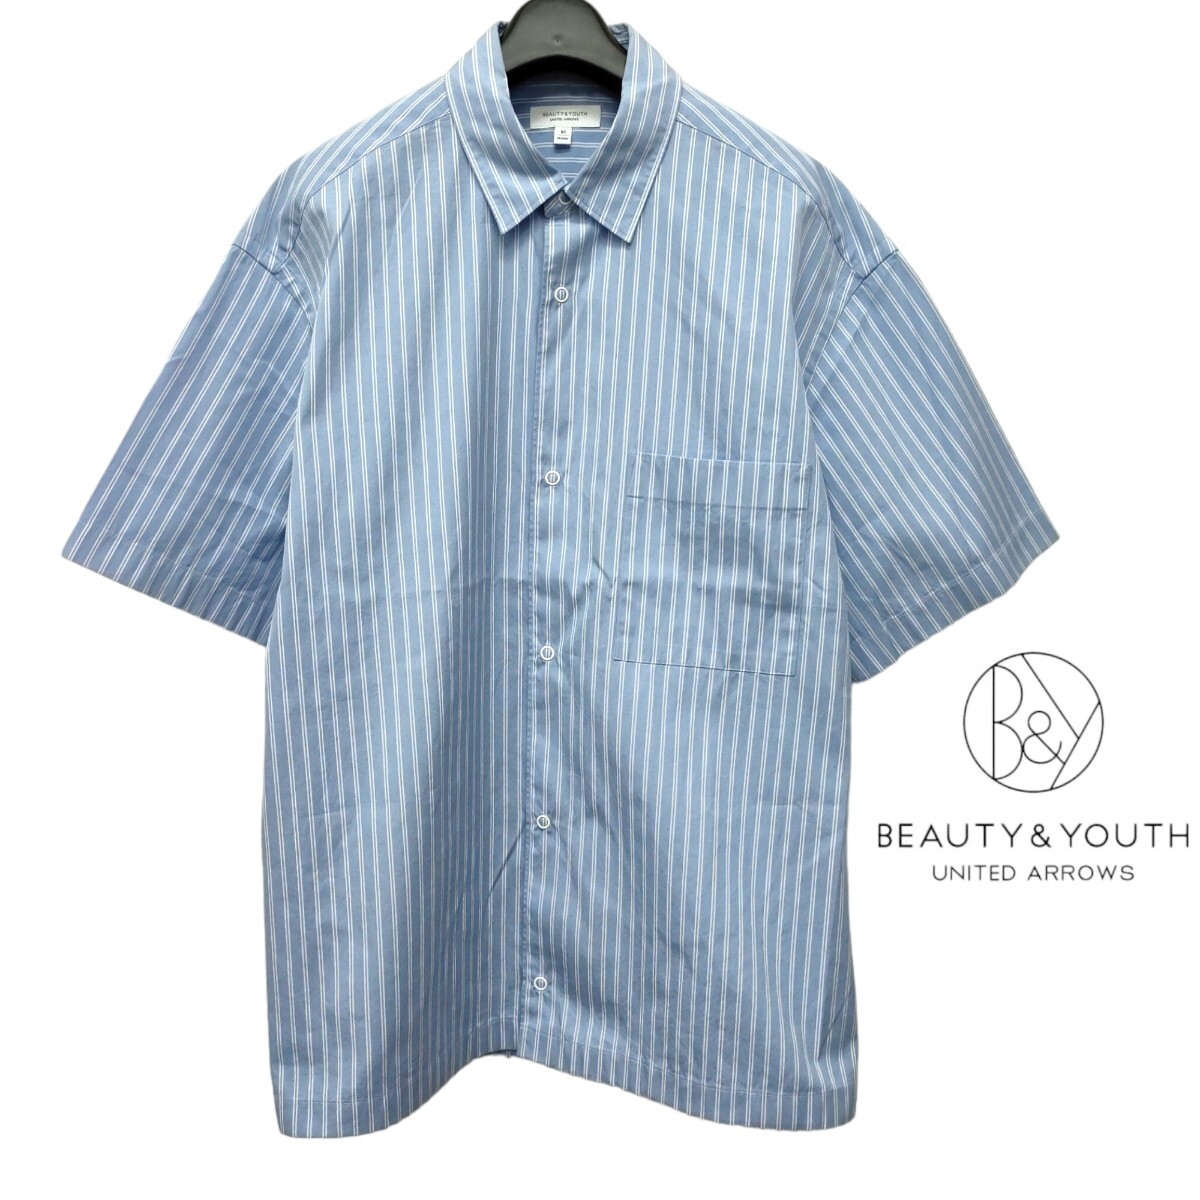 BEAUTY&YOUTH /UNITED ARROWS ビューティーアンドユース メンズ 半袖ボタンシャツ カッターシャツ 水色×白ストライプ 日本製 I-3784の画像1